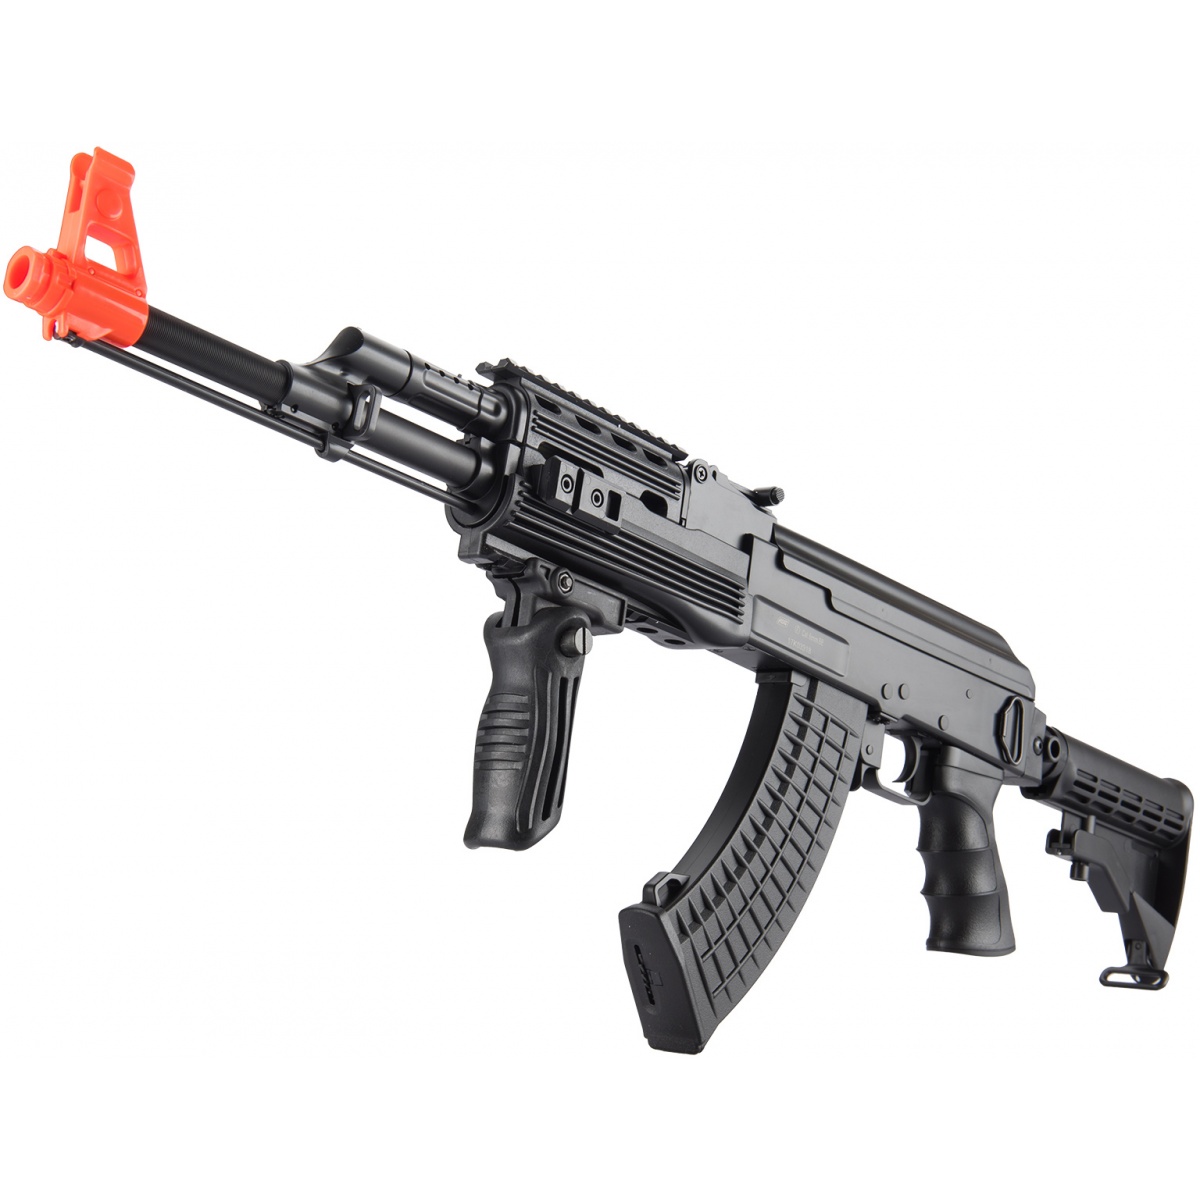 ASG Arsenal SA M7 Airsoft AK-47 Review  SaltyOldGamer Airsoft Review 